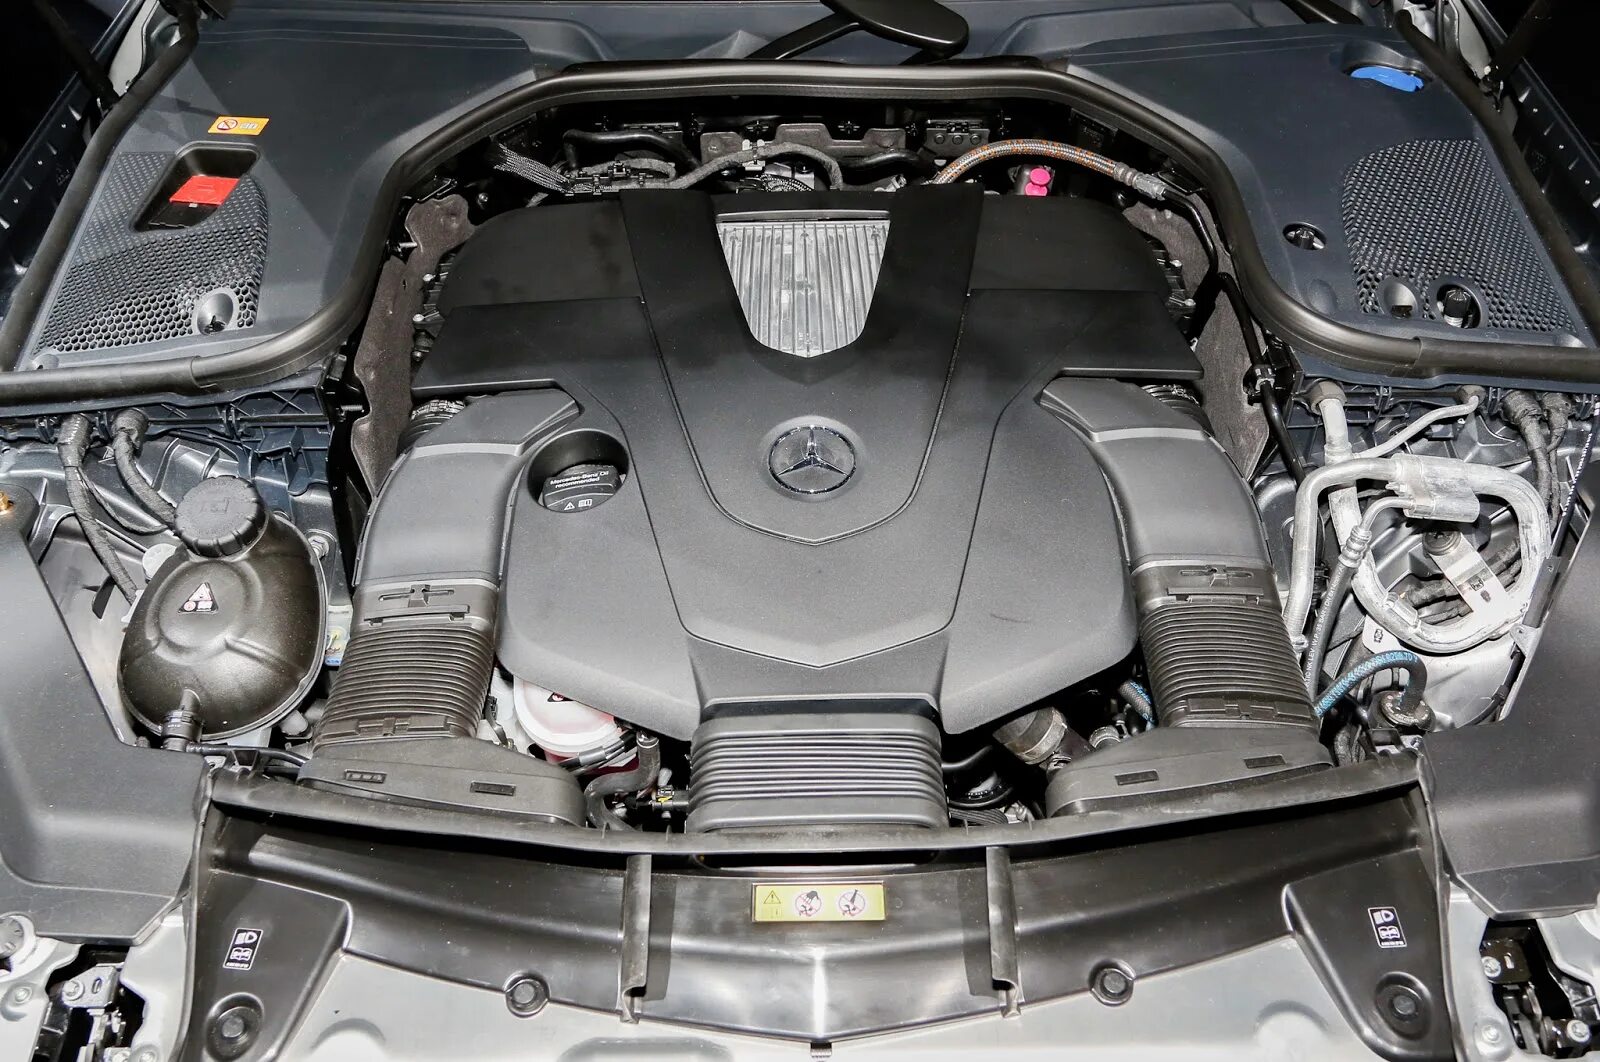 Mercedes e двигатели. Motor Mercedes e350. Mercedes e200 мотор. Mercedes e350 2011 двигатель. Двигатель Мерседес e350 4matic.